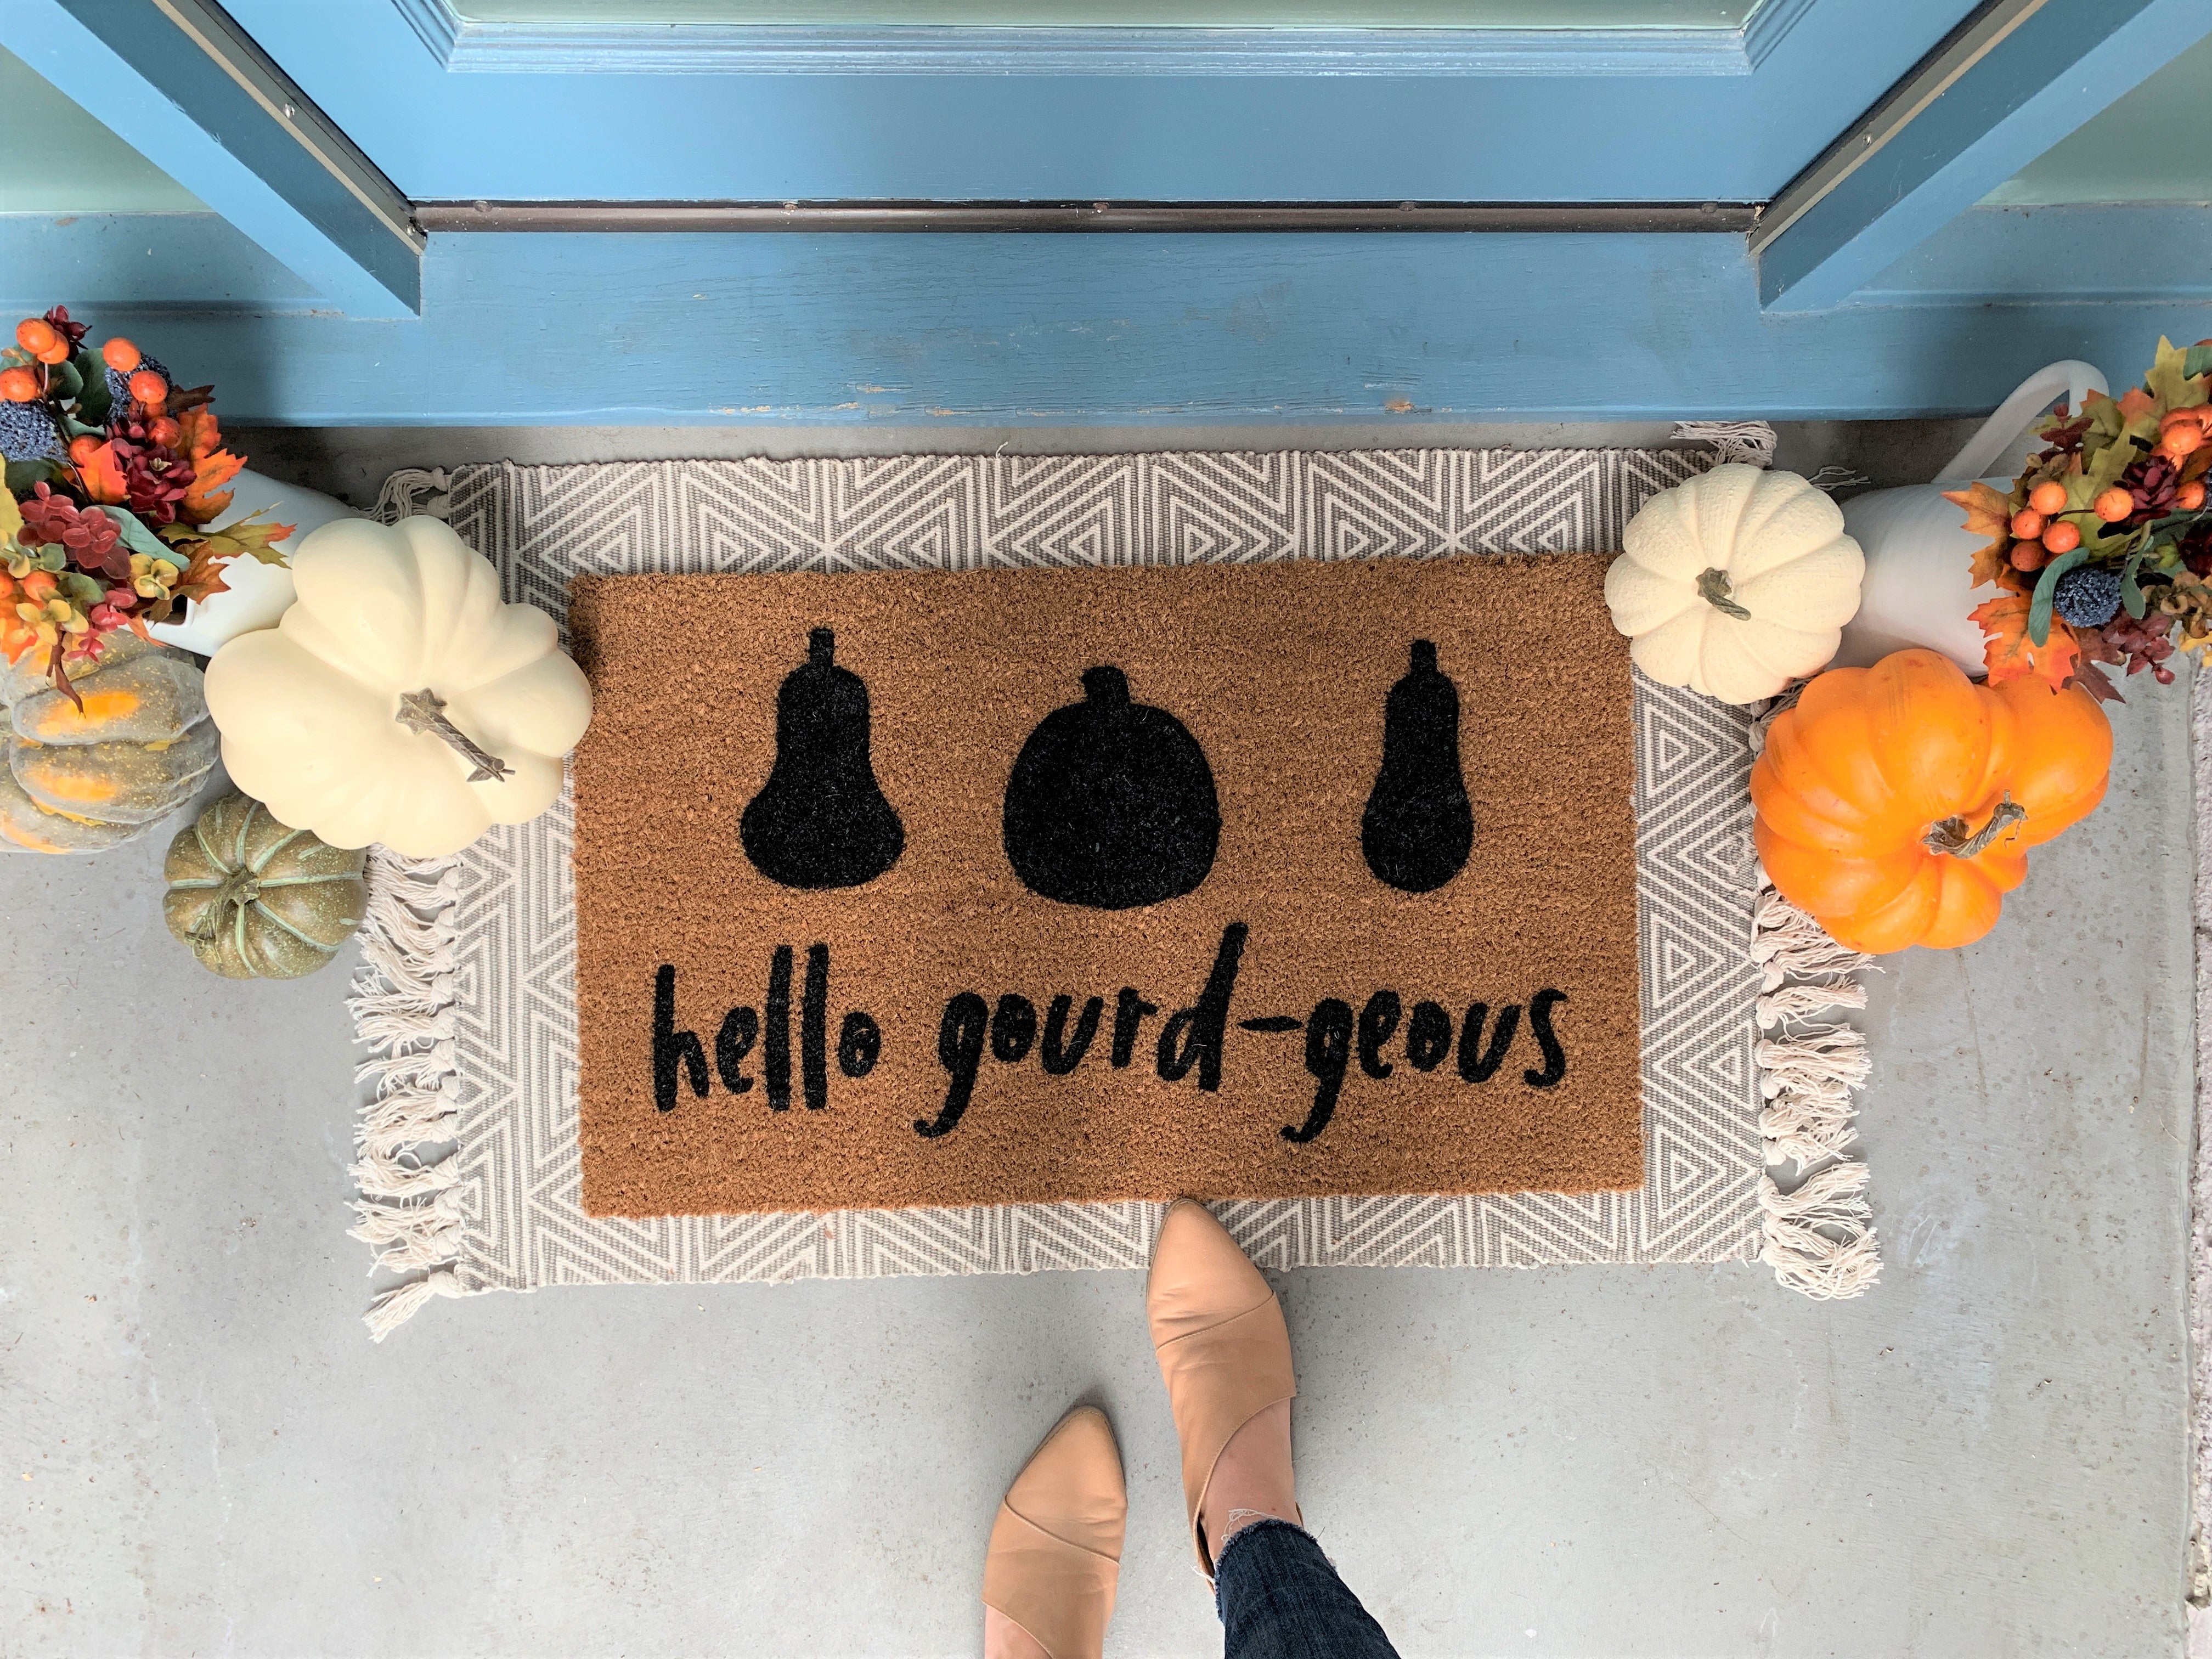 Thankful AF Doormat — joriandco